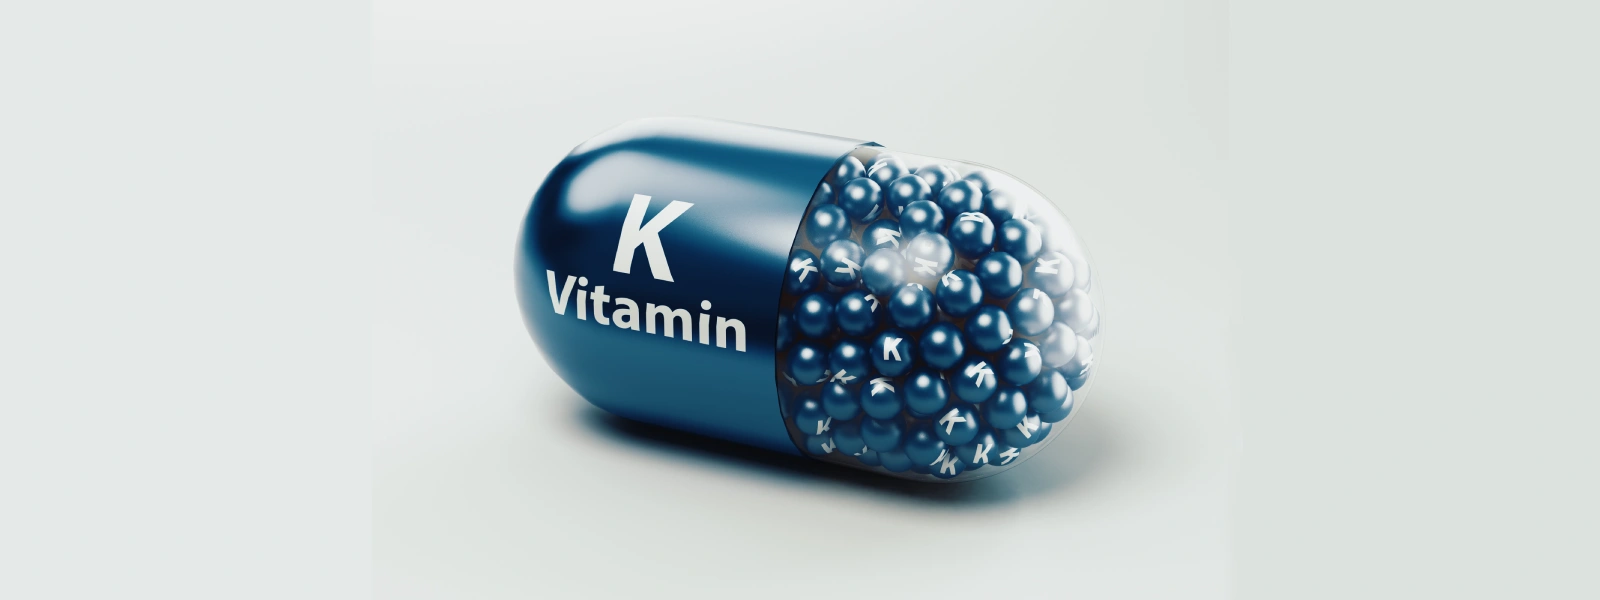 K2 Vitamini Eksikliği Neden Olur?